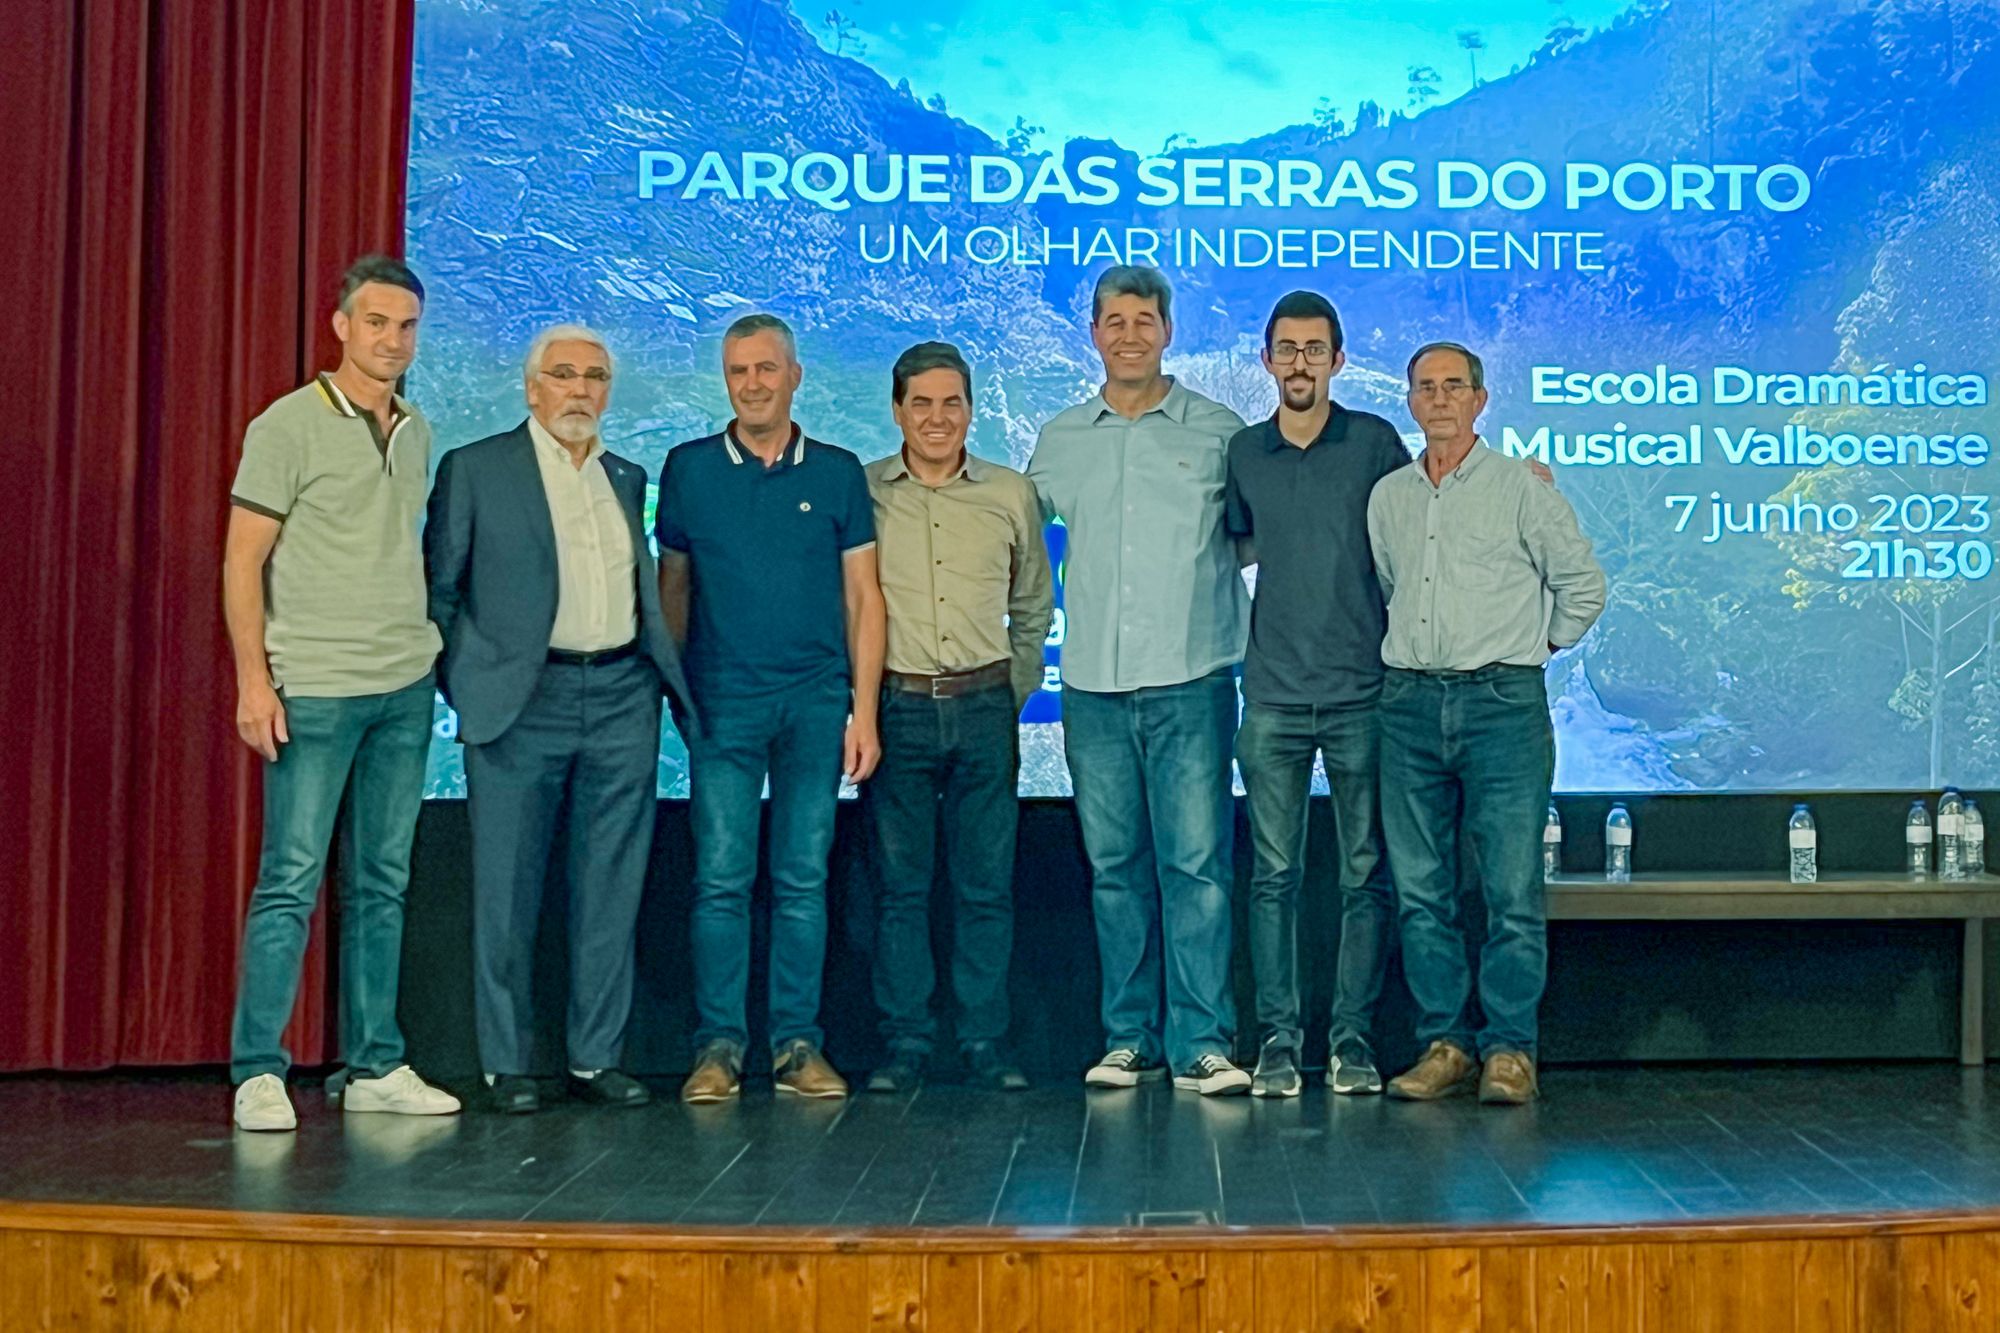 Paulo Ferreira - documentário parque das serras do porto